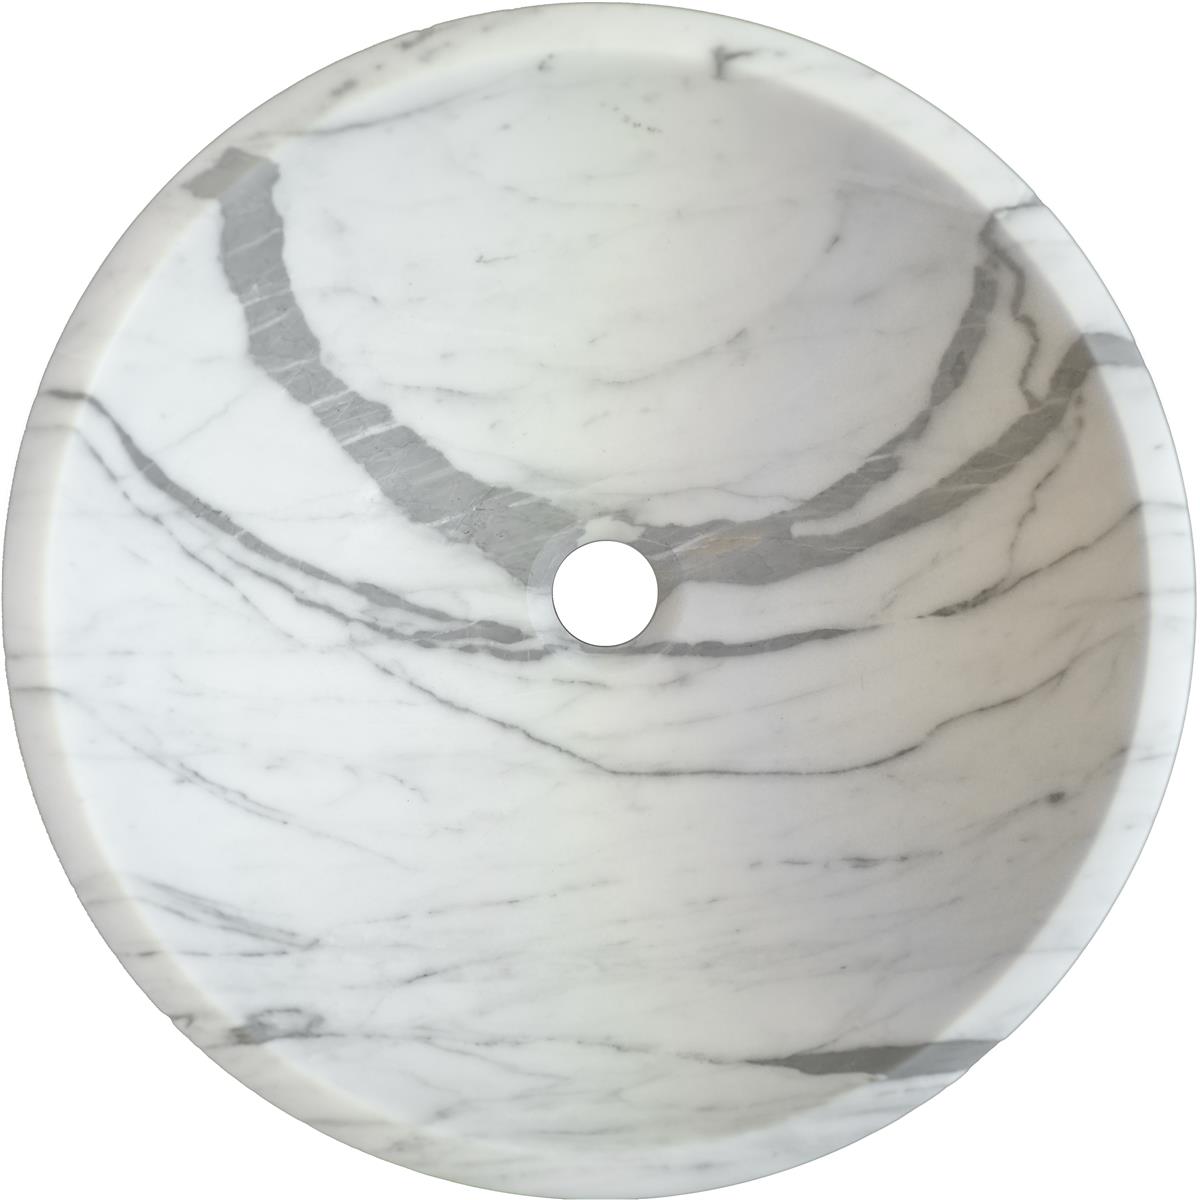 Carrara marmorservant 